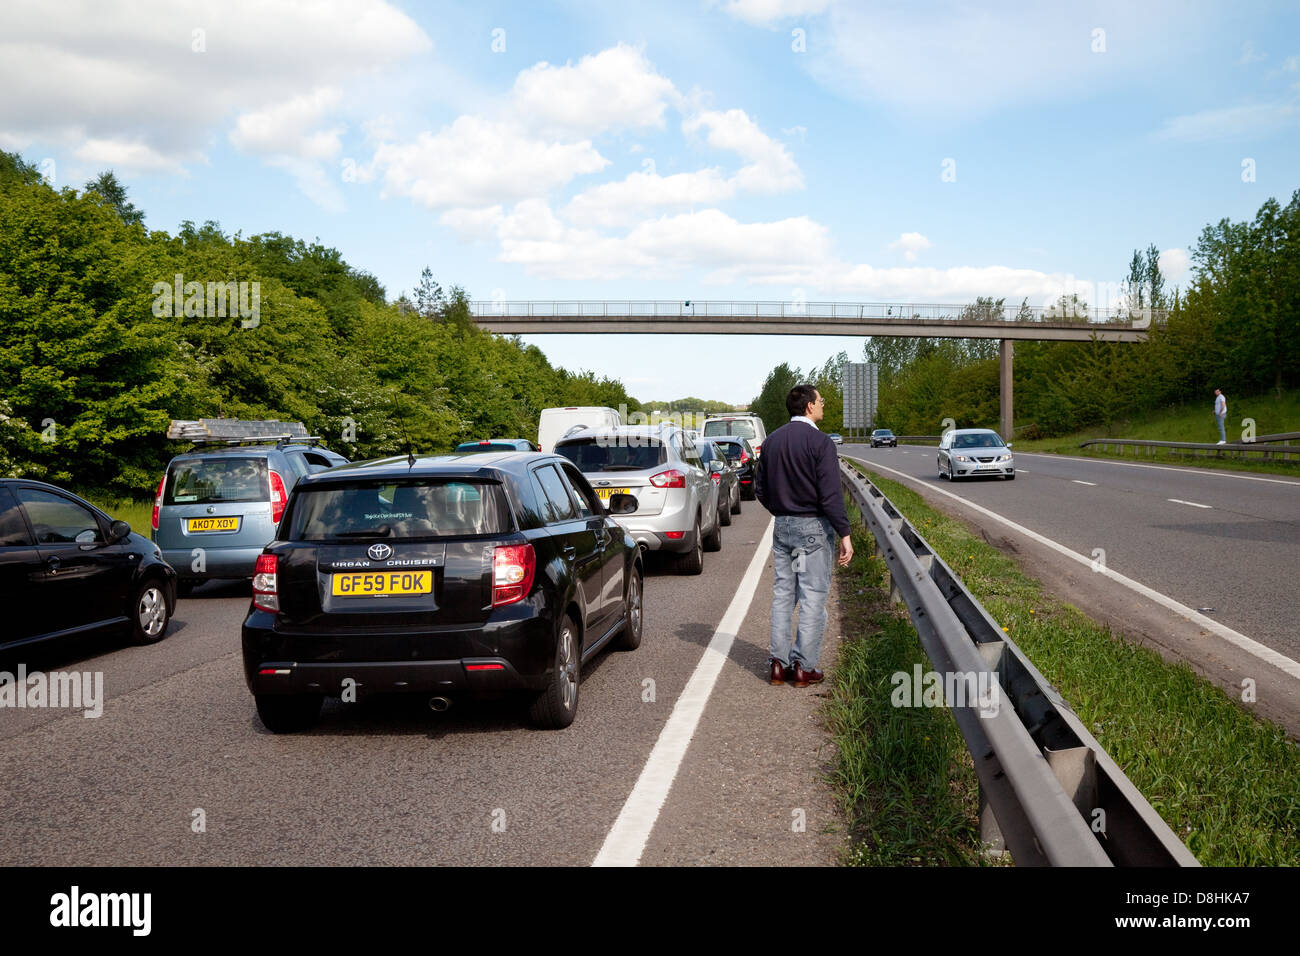 Les gens sur la route pendant un embouteillage dû à un accident sur l'A20 à deux voies road, Kent UK Banque D'Images